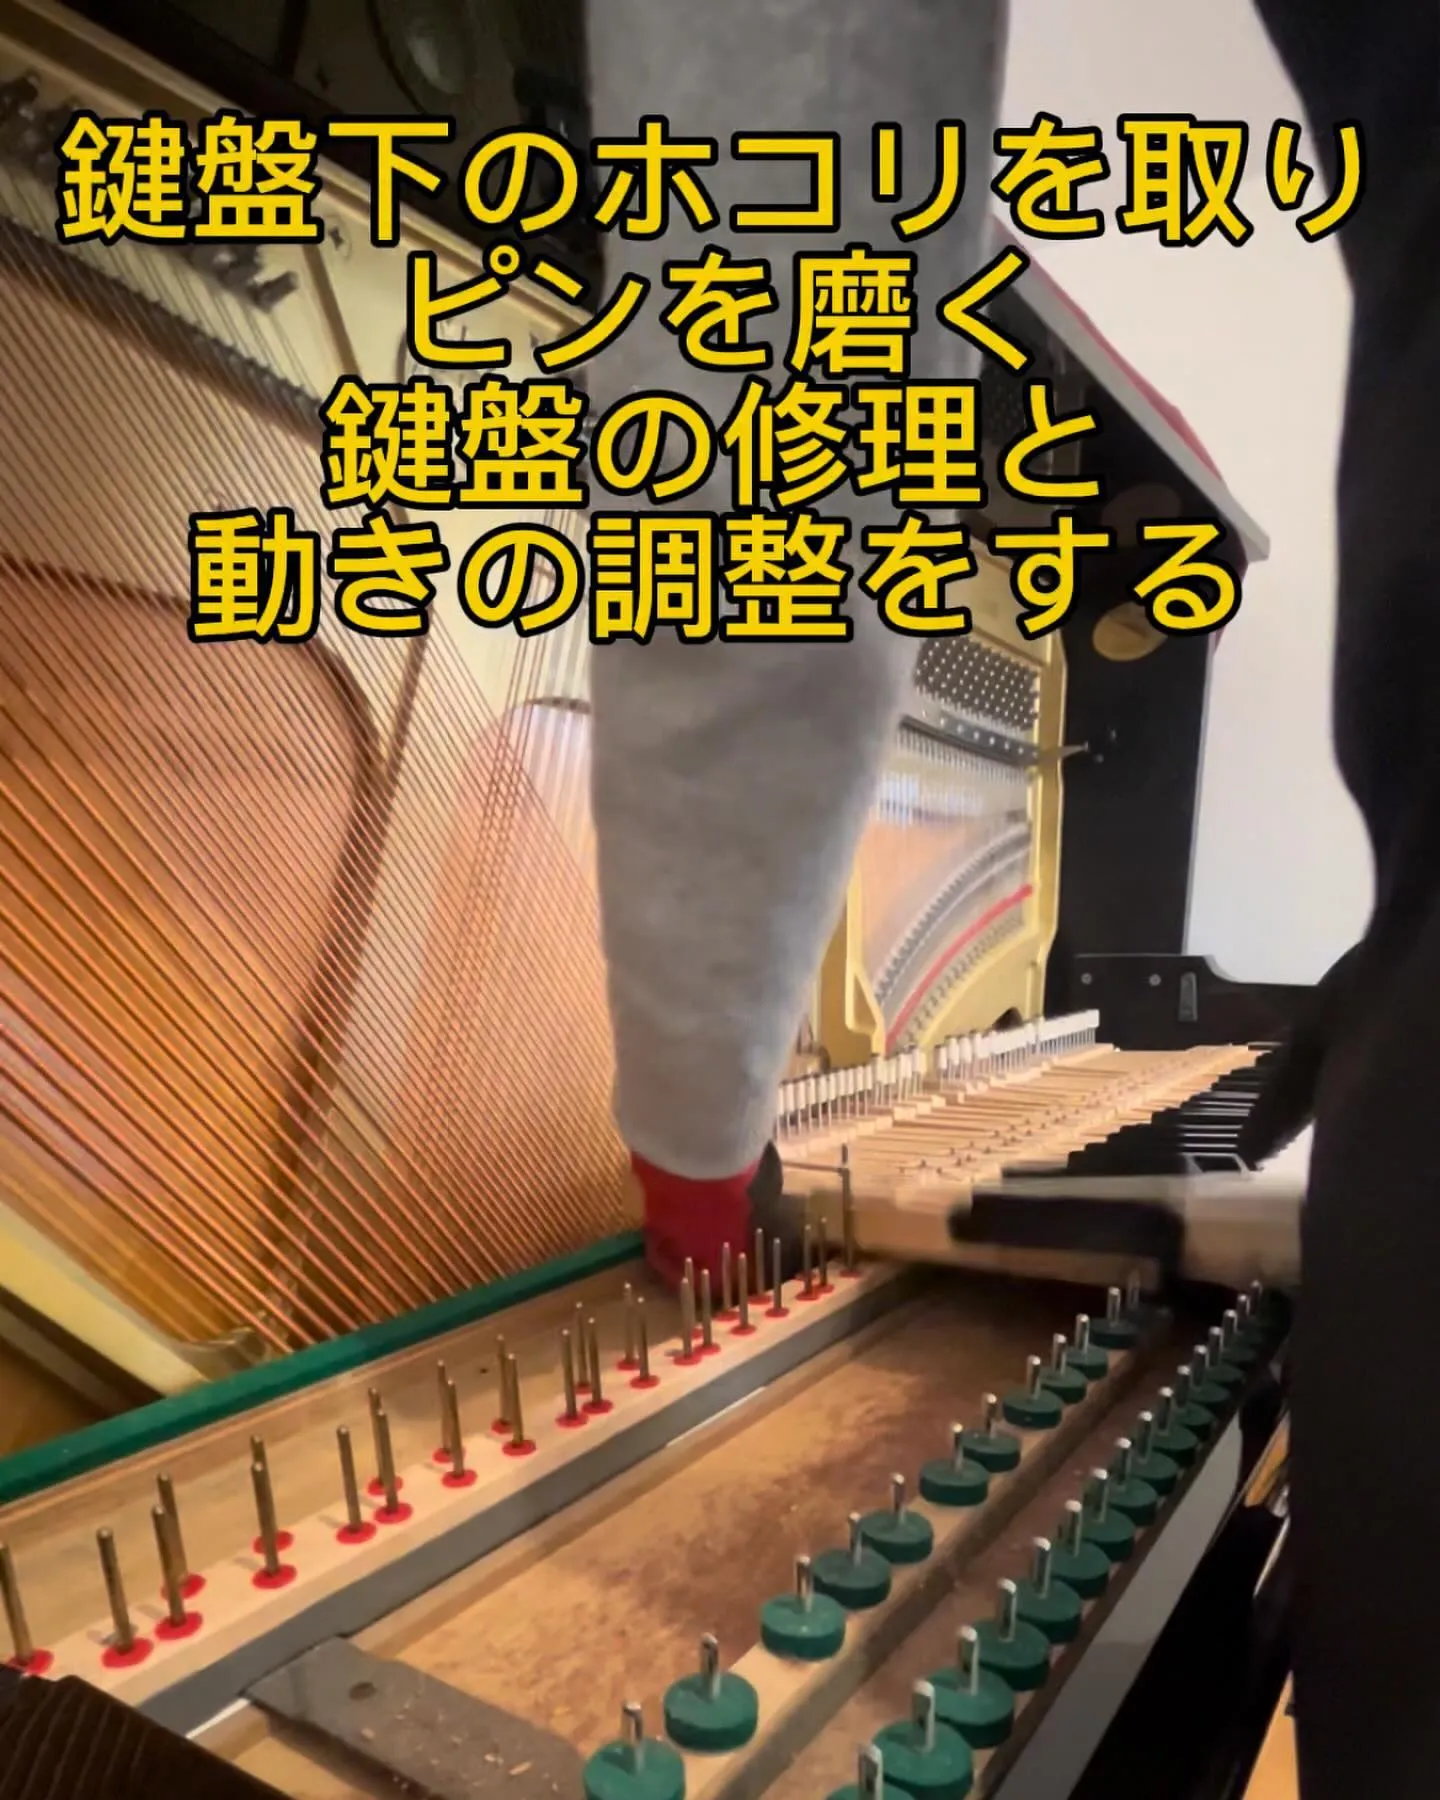 ピアノ調律と鍵盤修理調整